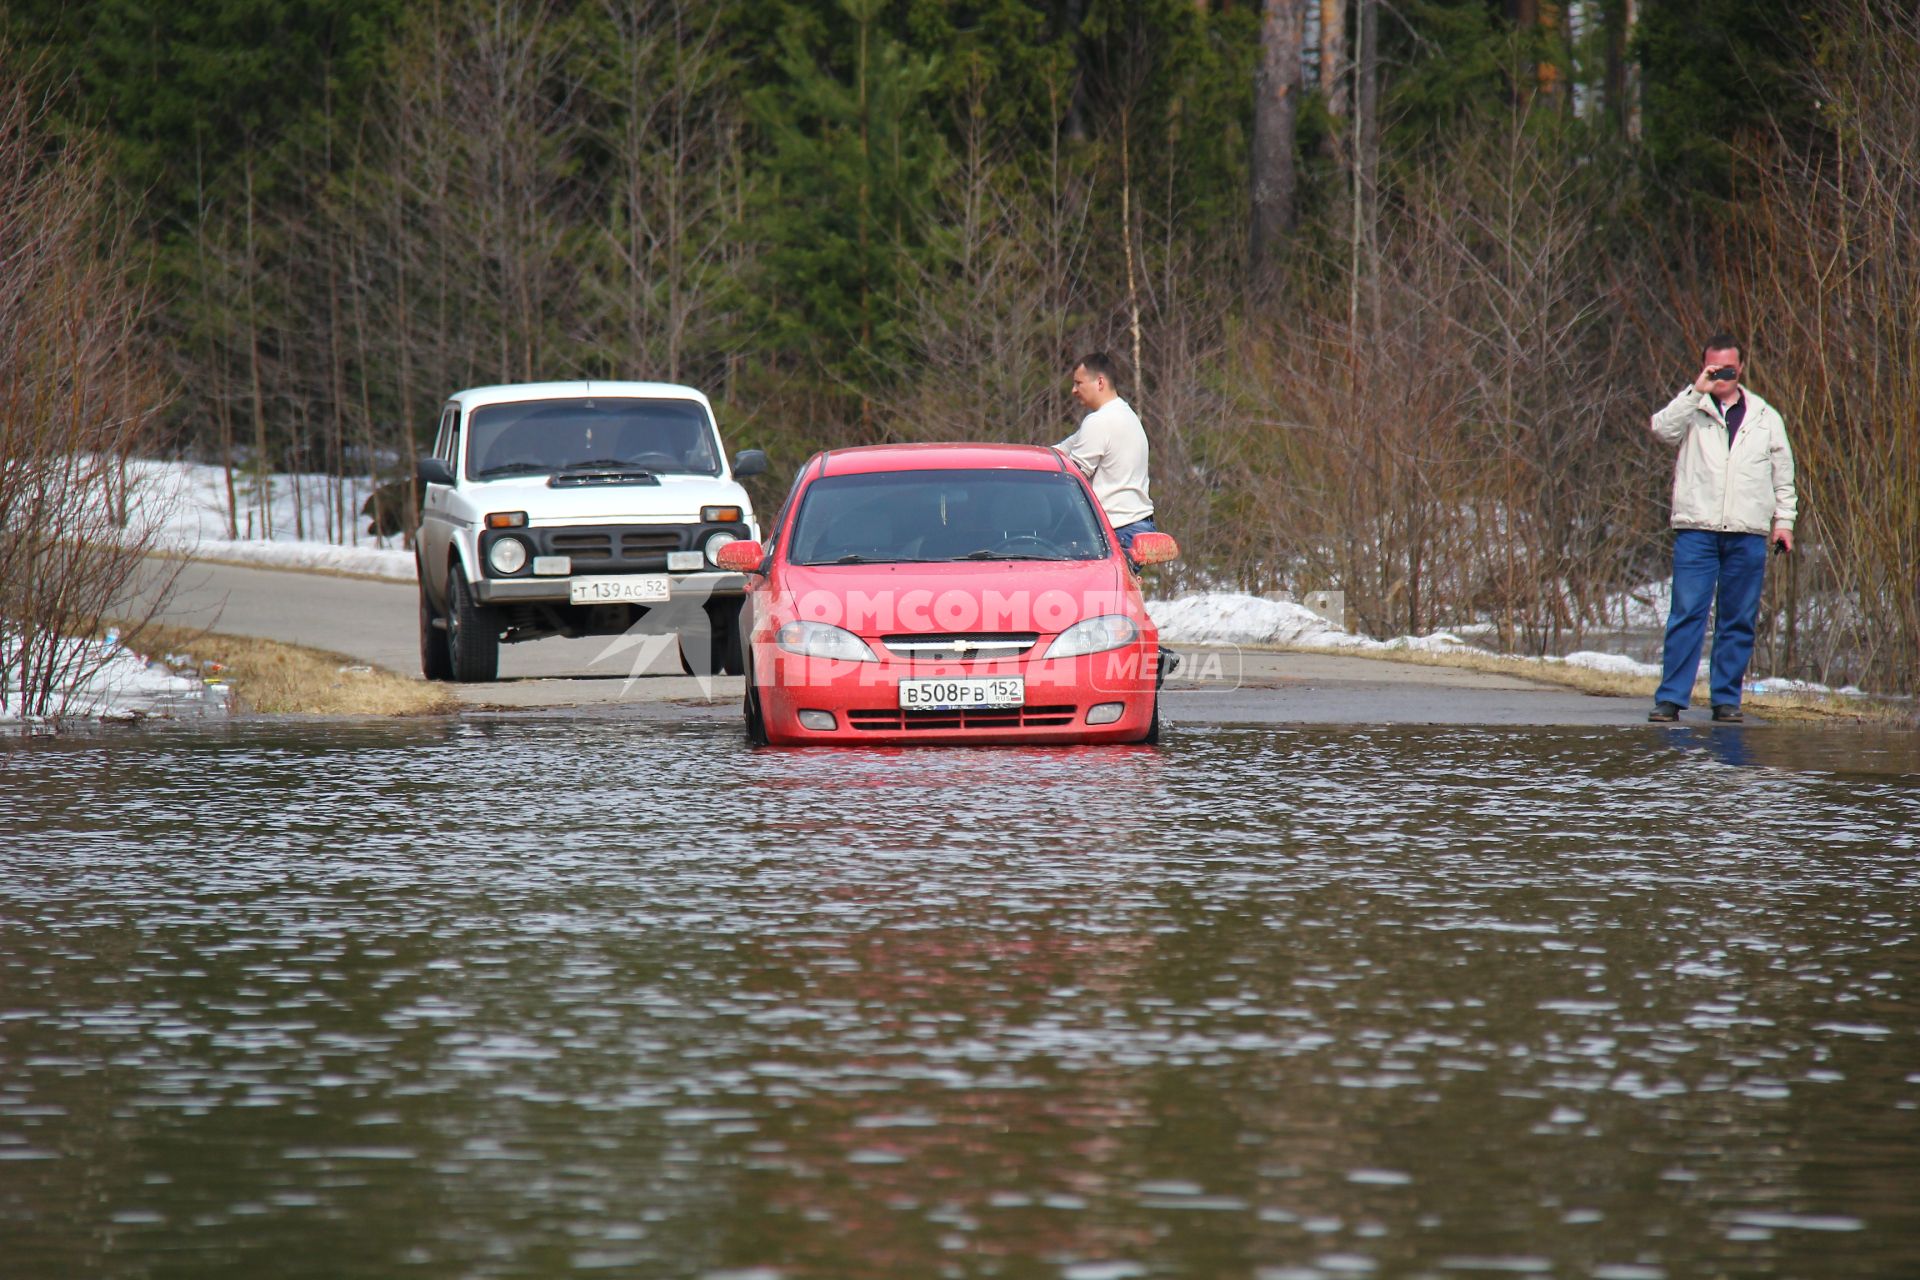 Паводок на реке Уста Уренского района Нижегородской области. Автомобили пытаются перебраться через затопленную дорогу.